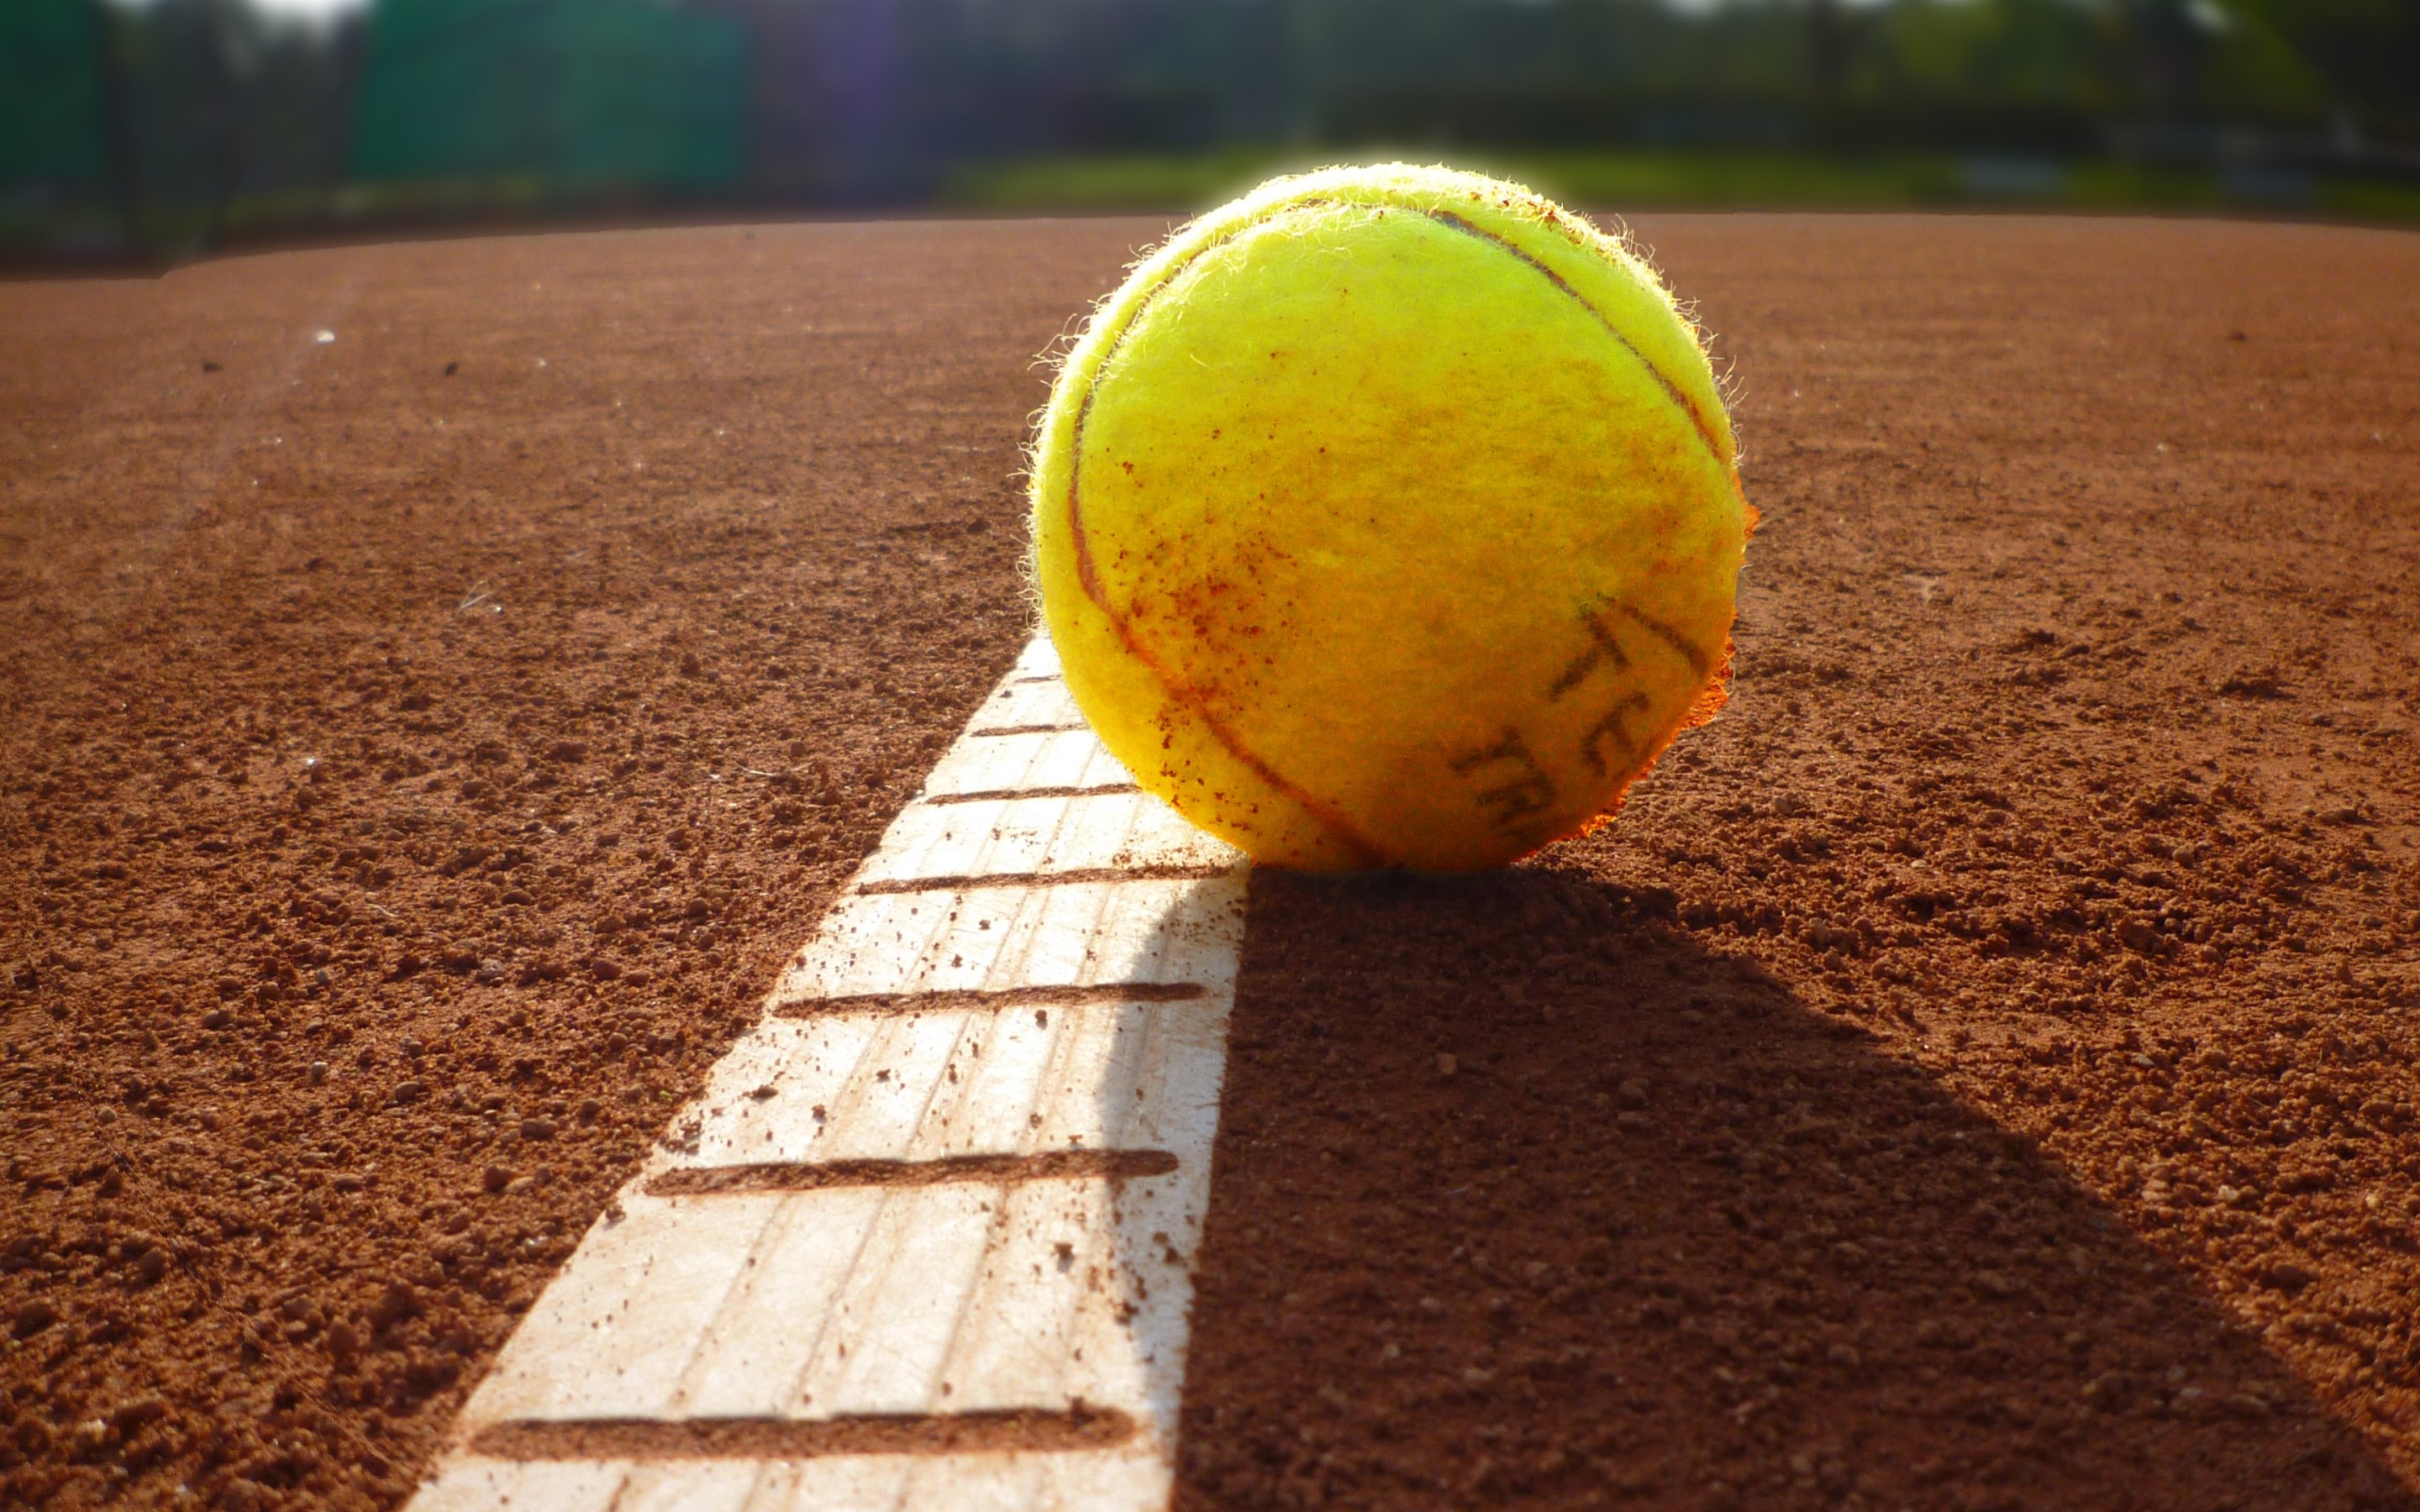 テニスの壁紙,テニスボール,テニス,テニスコート,ラケットスポーツ,黄